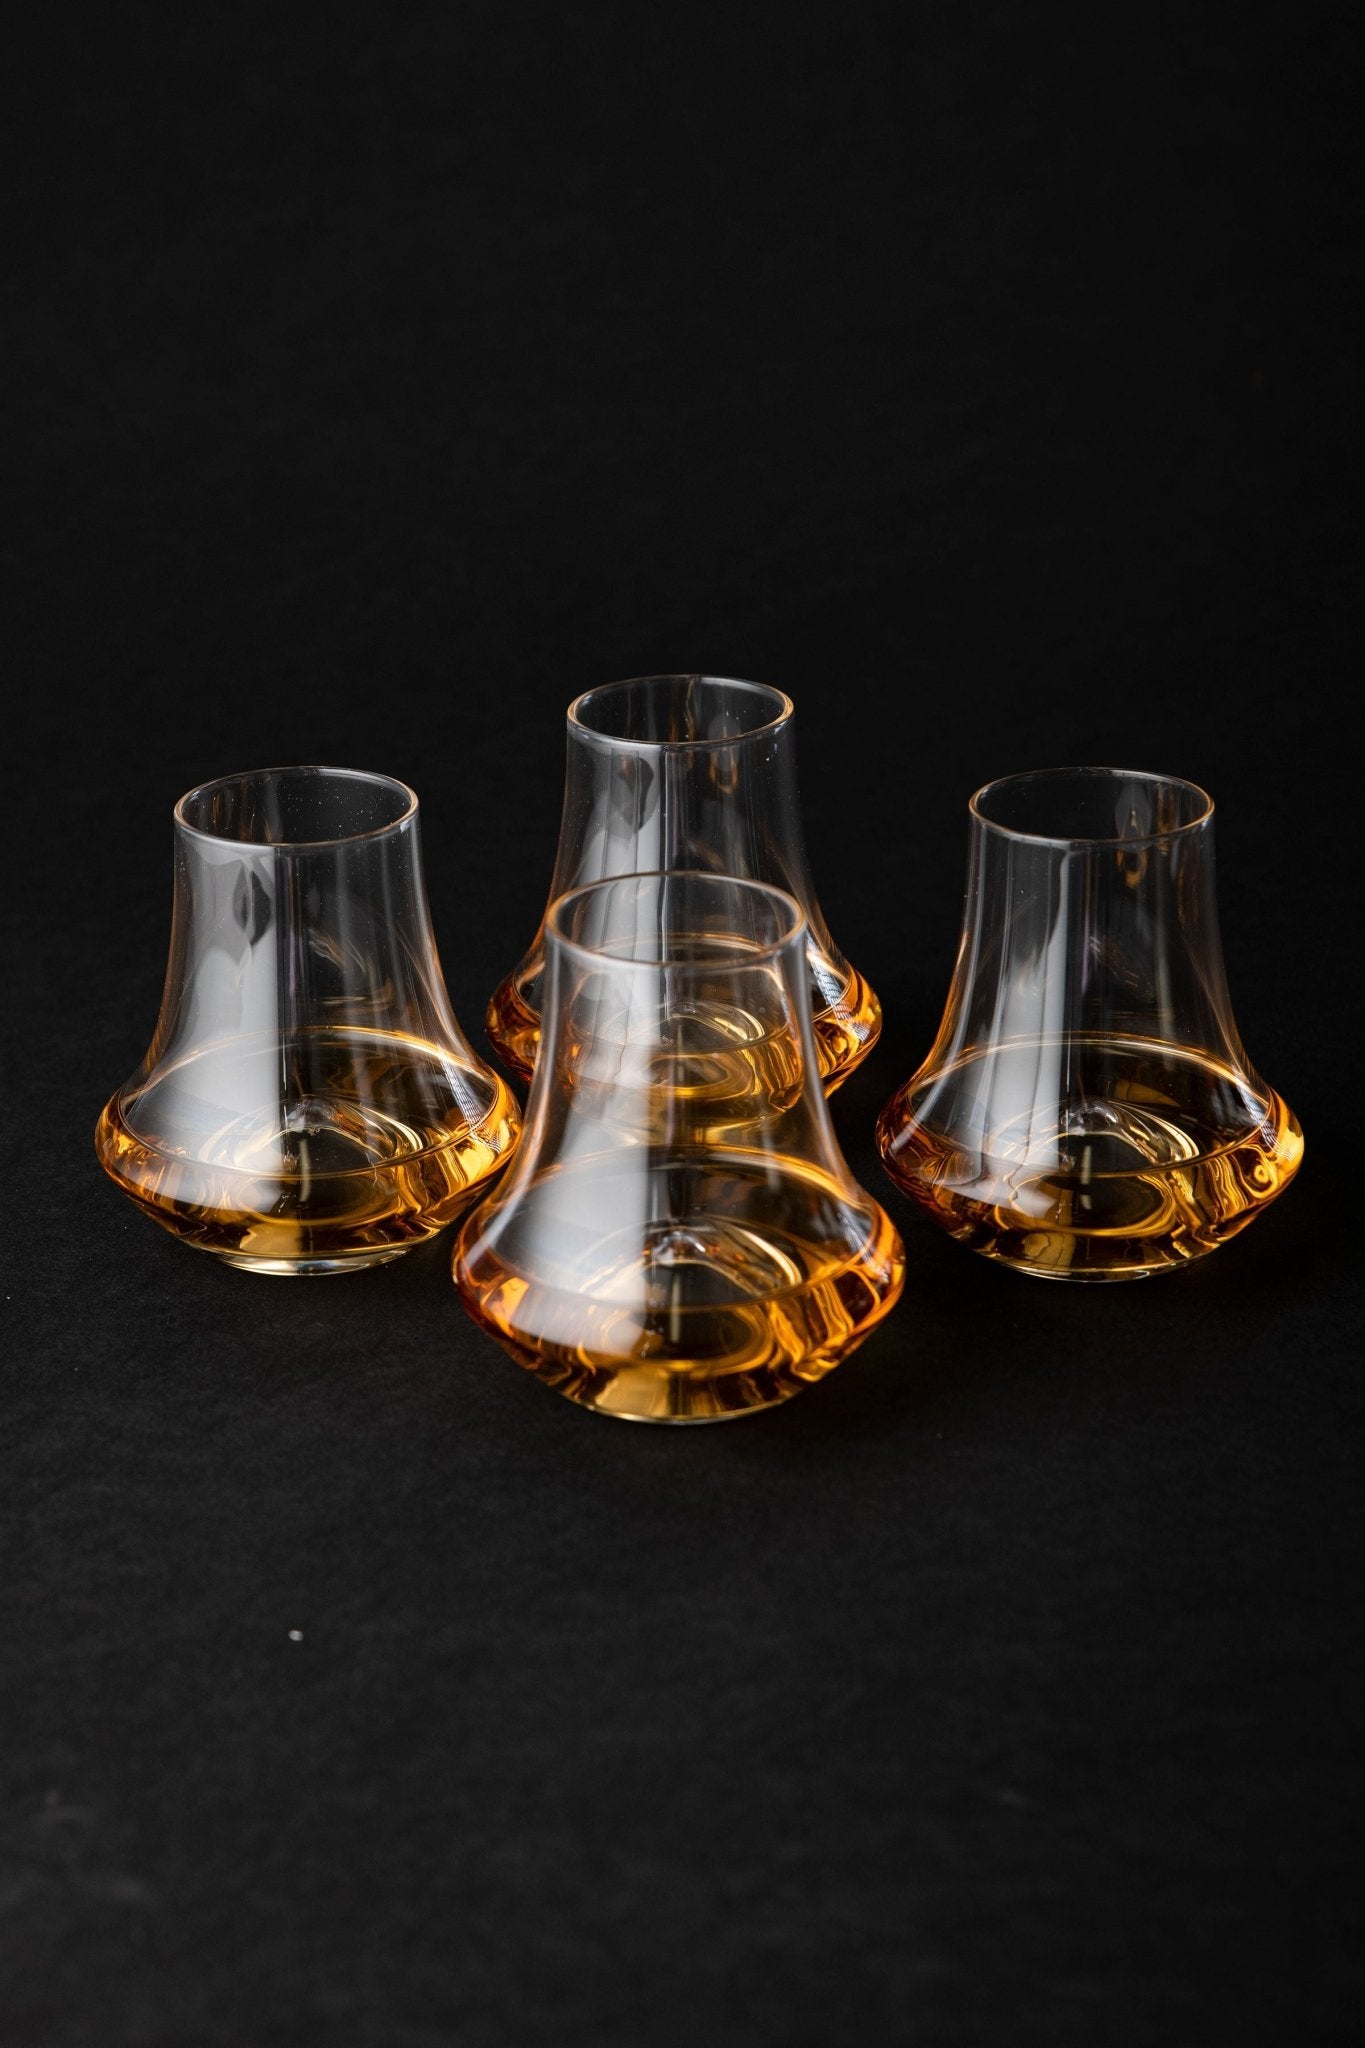 Whiskey Snifter Glasses - Set of 4 